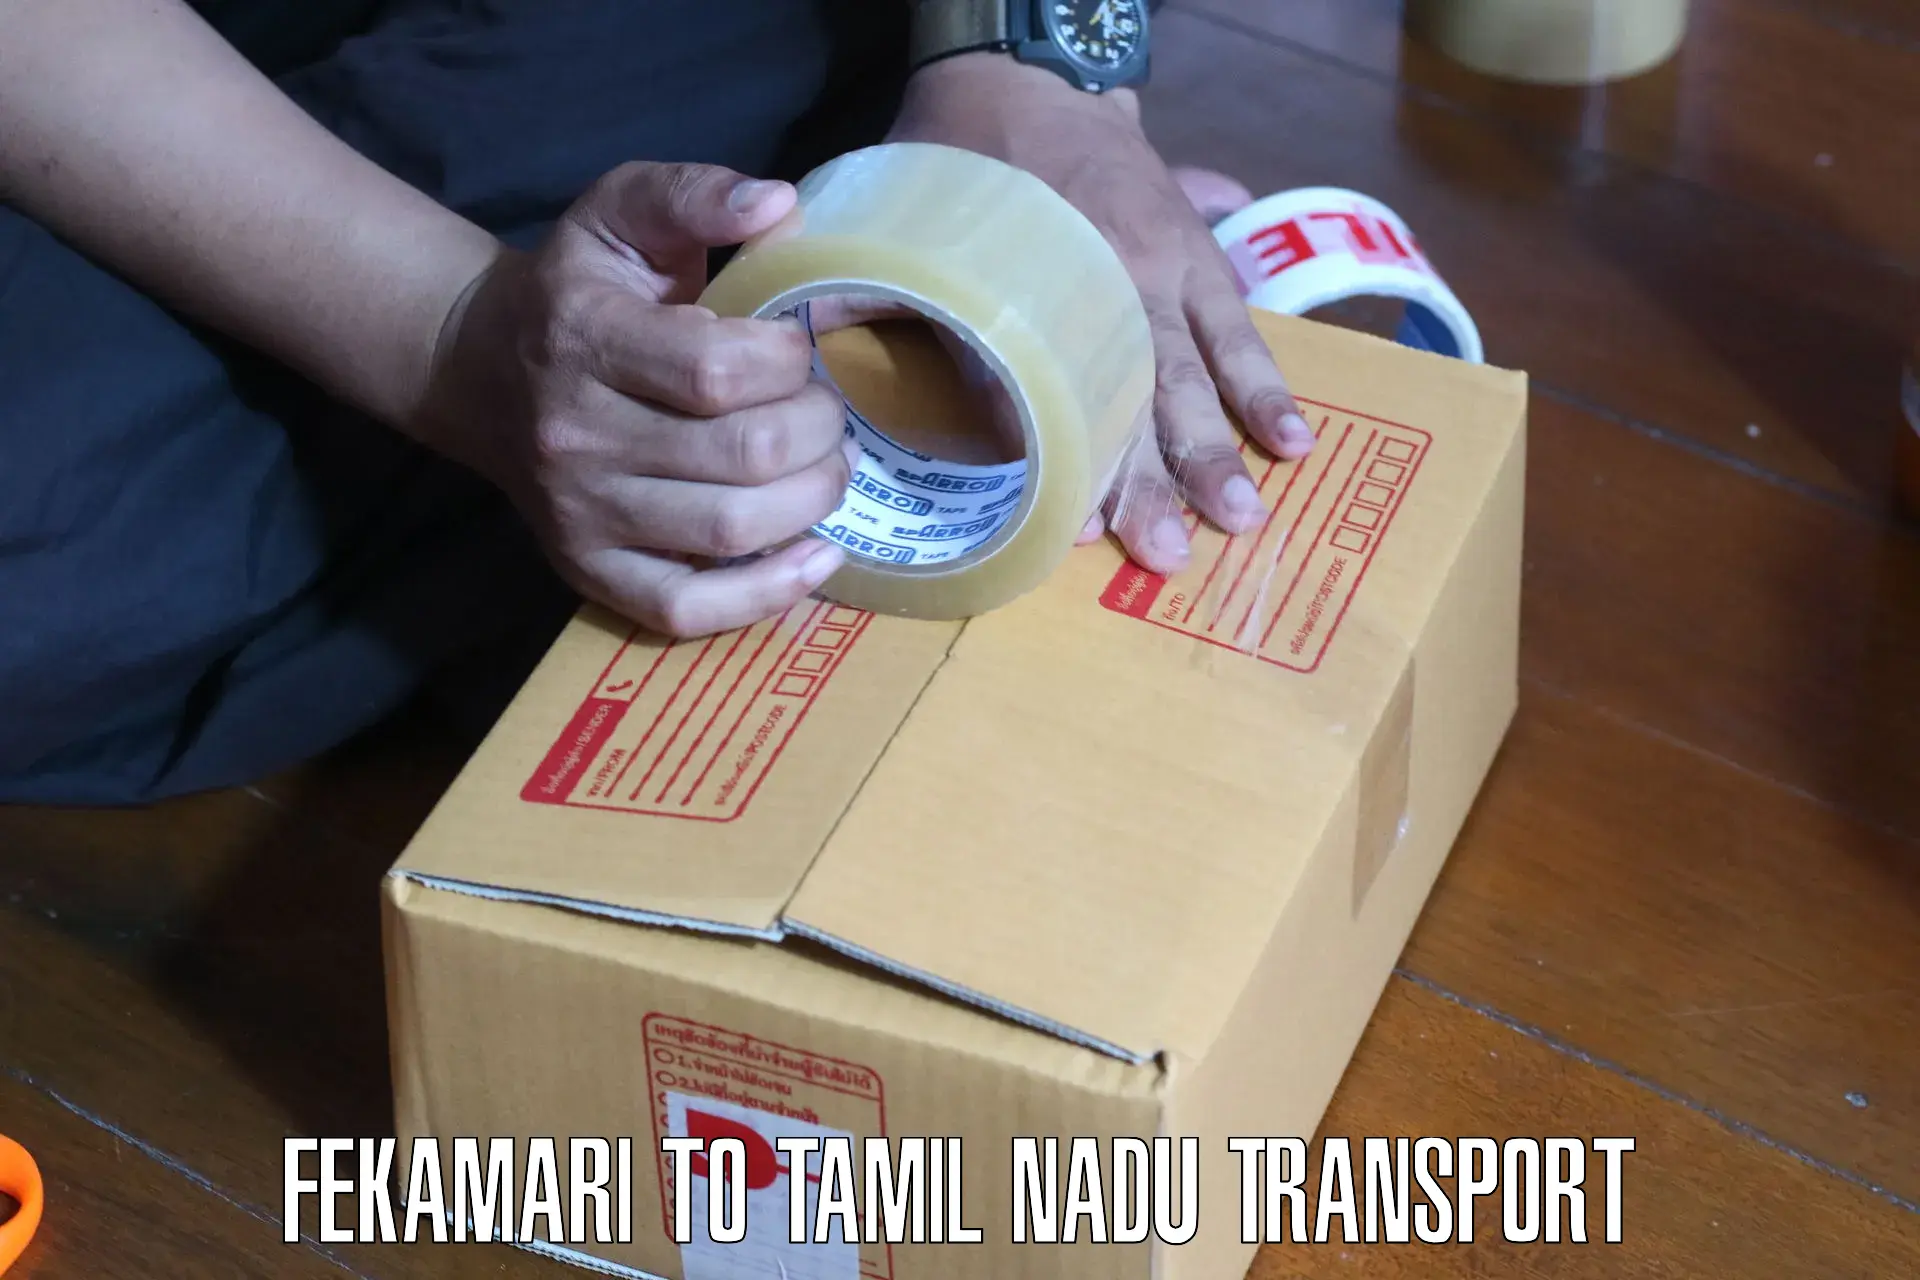 Pick up transport service Fekamari to Karaikudi